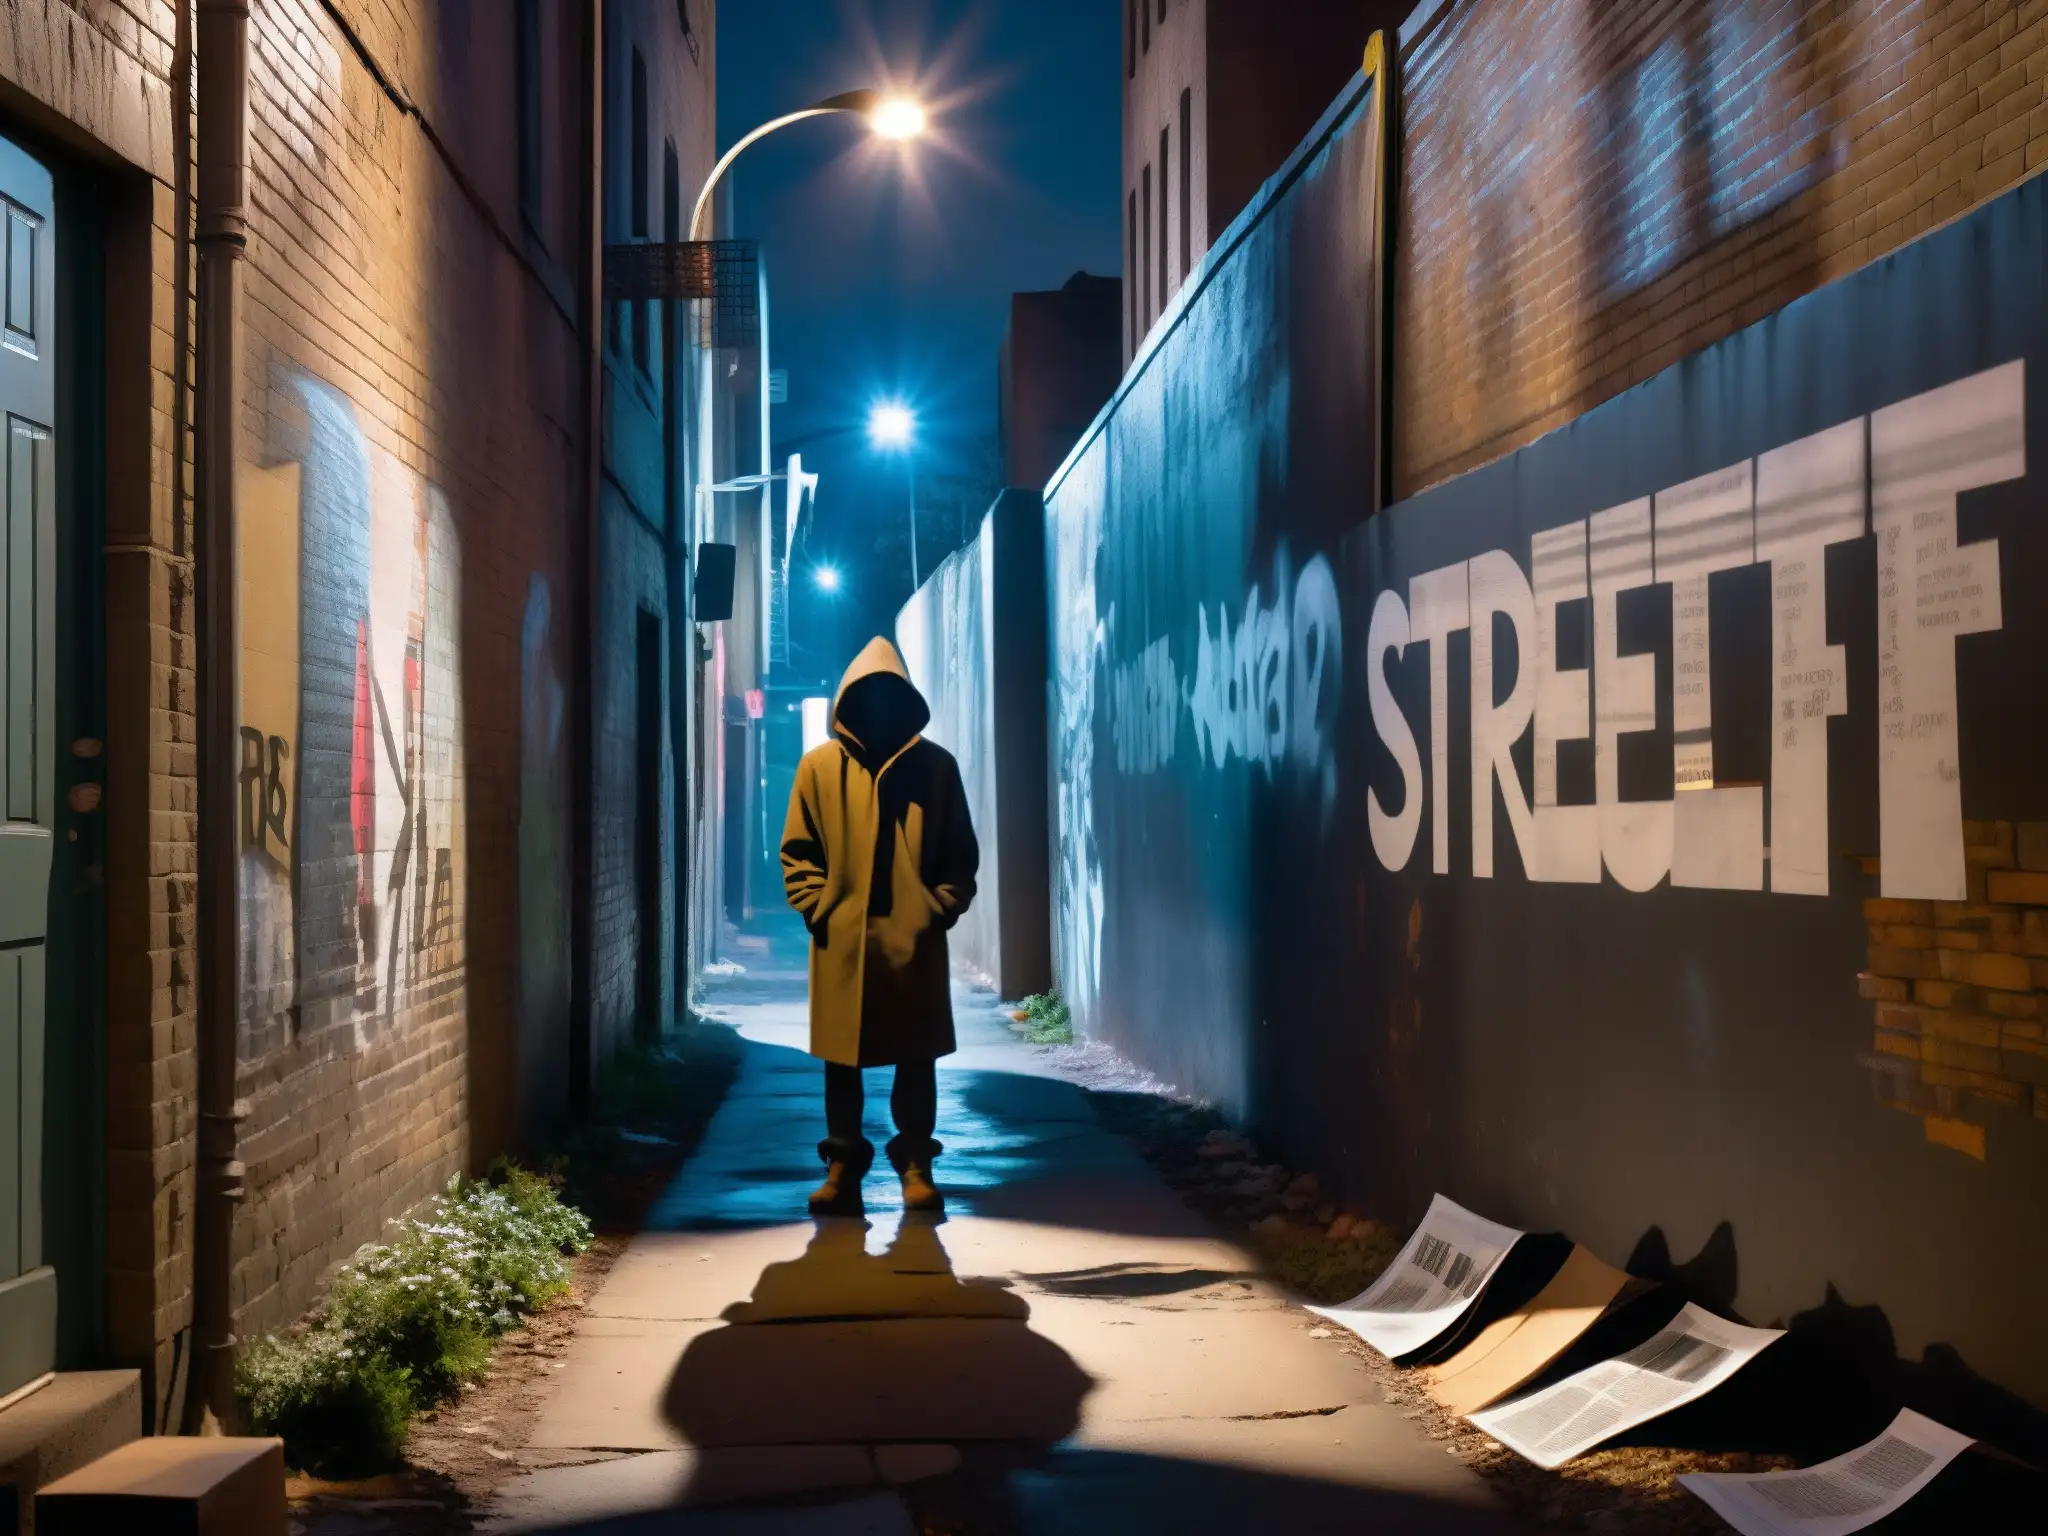 Alleyway urbano misterioso de noche con graffiti inquietante y atmósfera de psicopatología en leyendas urbanas